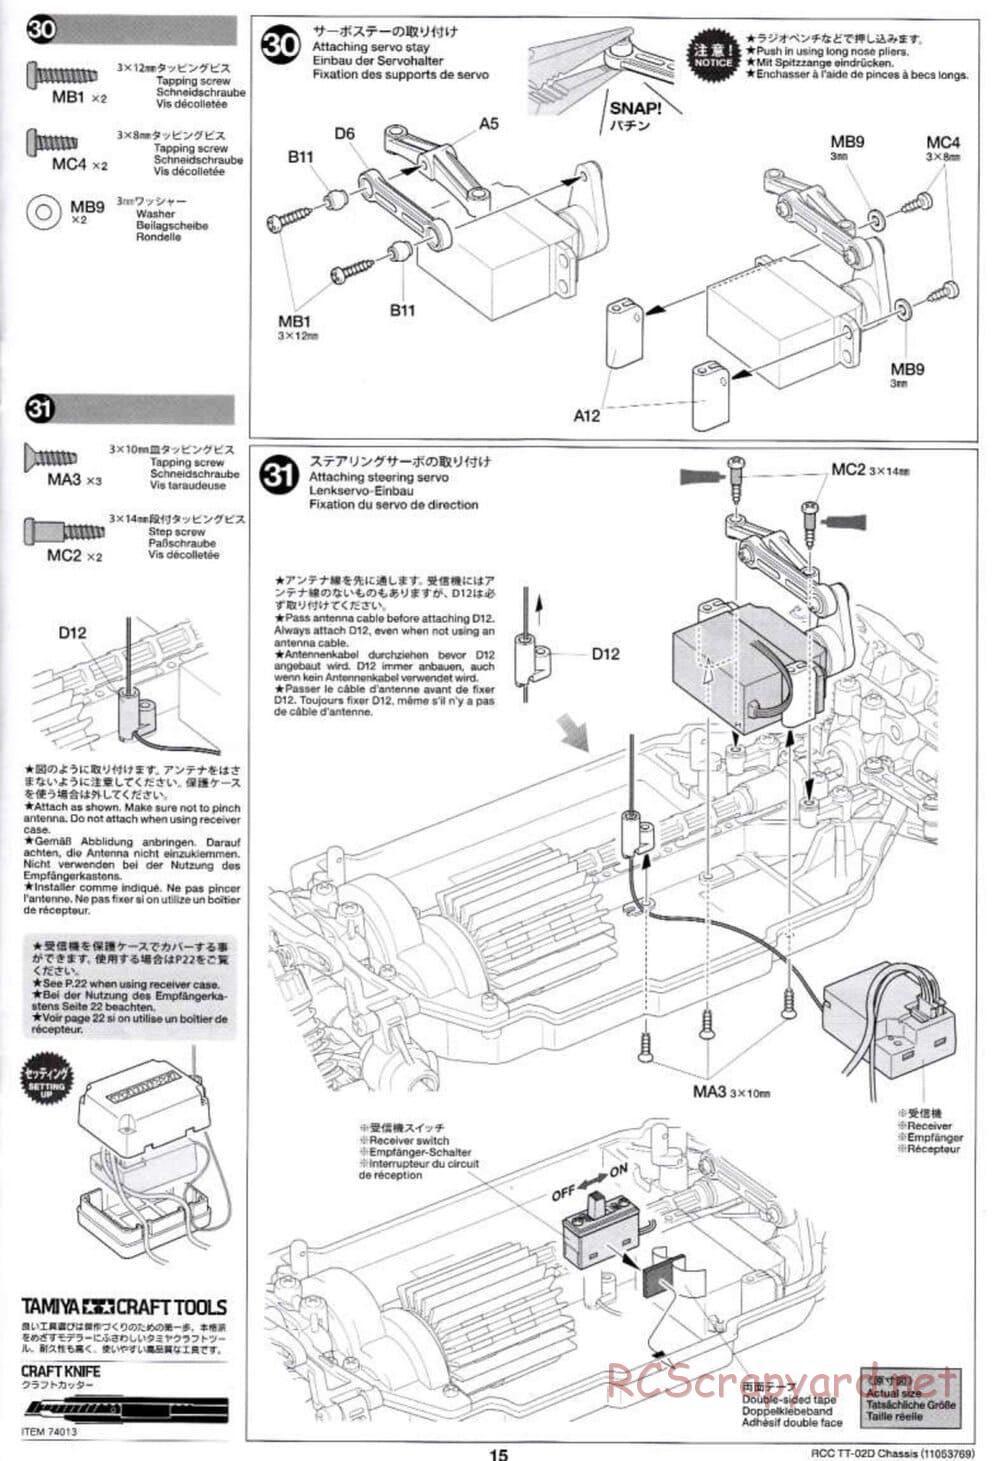 Tamiya - TT-02D Chassis - Manual - Page 15